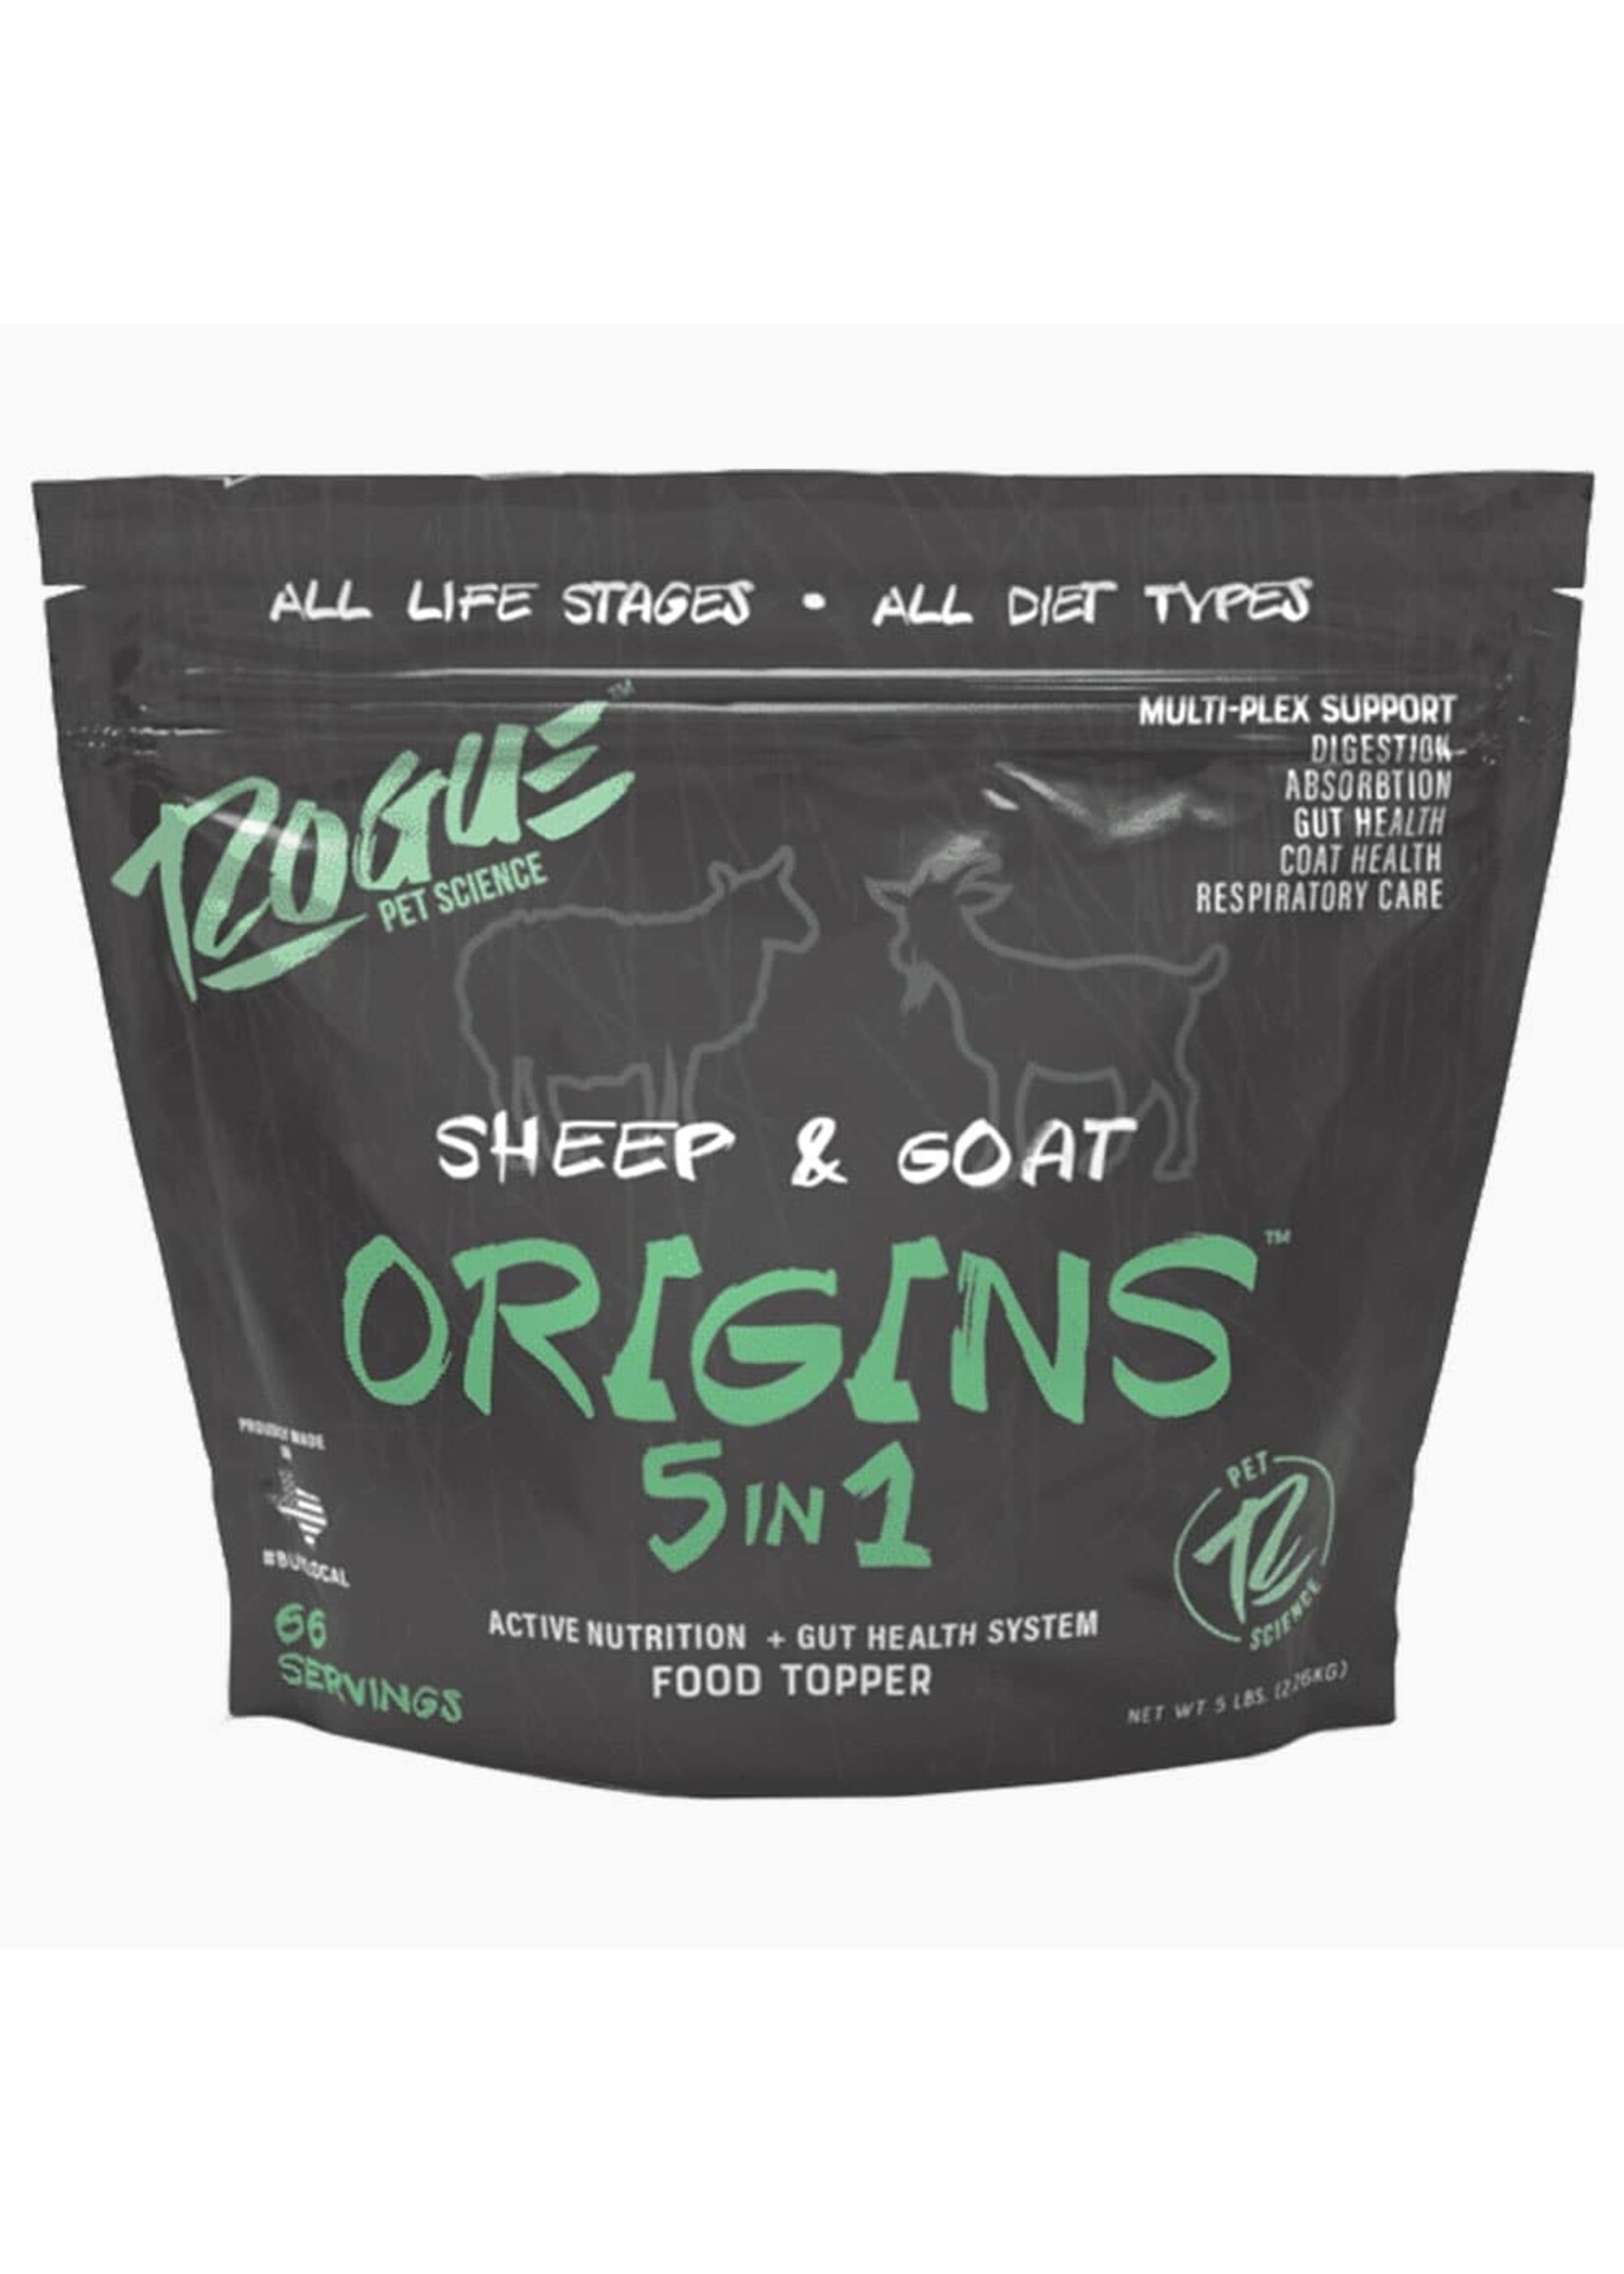 Rogue Pet Science Rogue Origins 5 in 1 Sheep & Goat 5lb